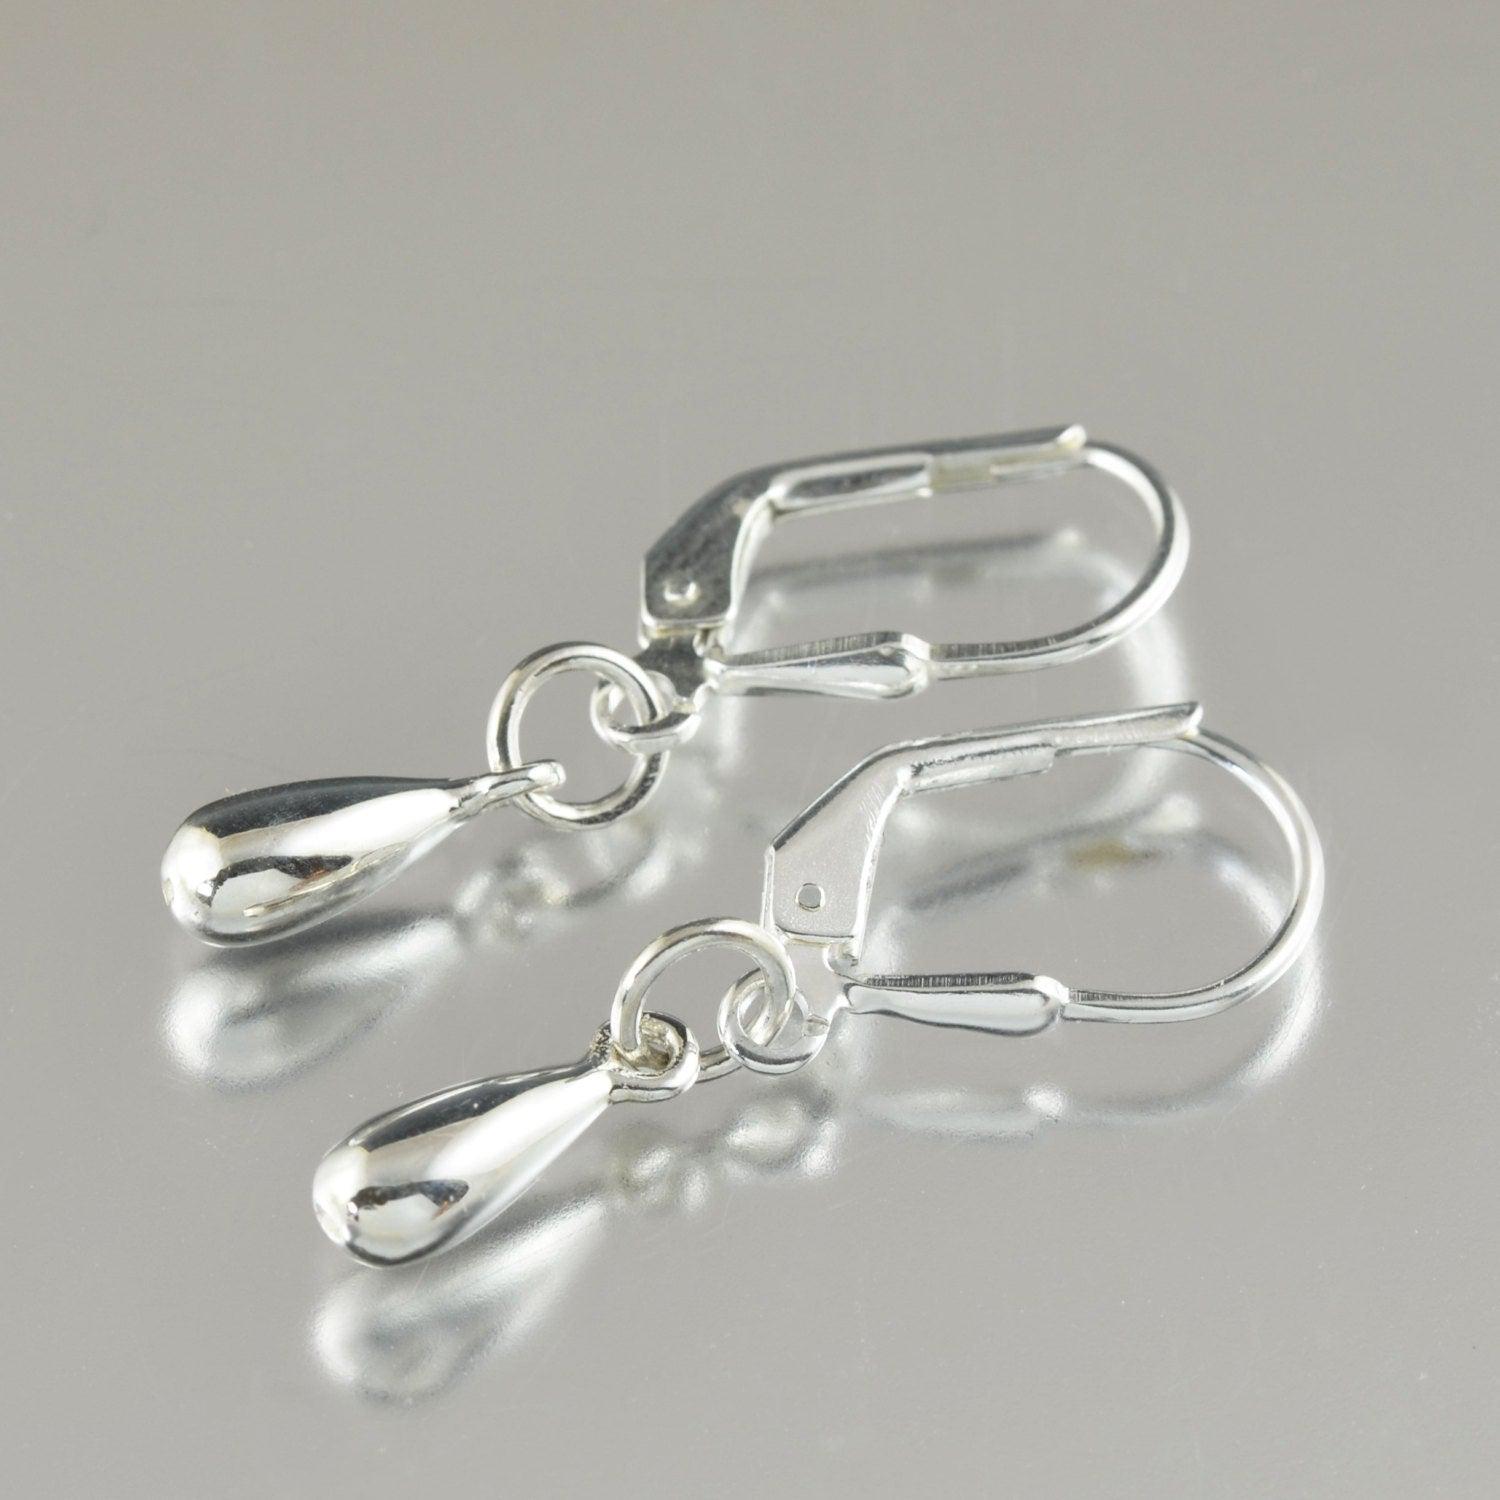 Sterling silver Teardrop earrings